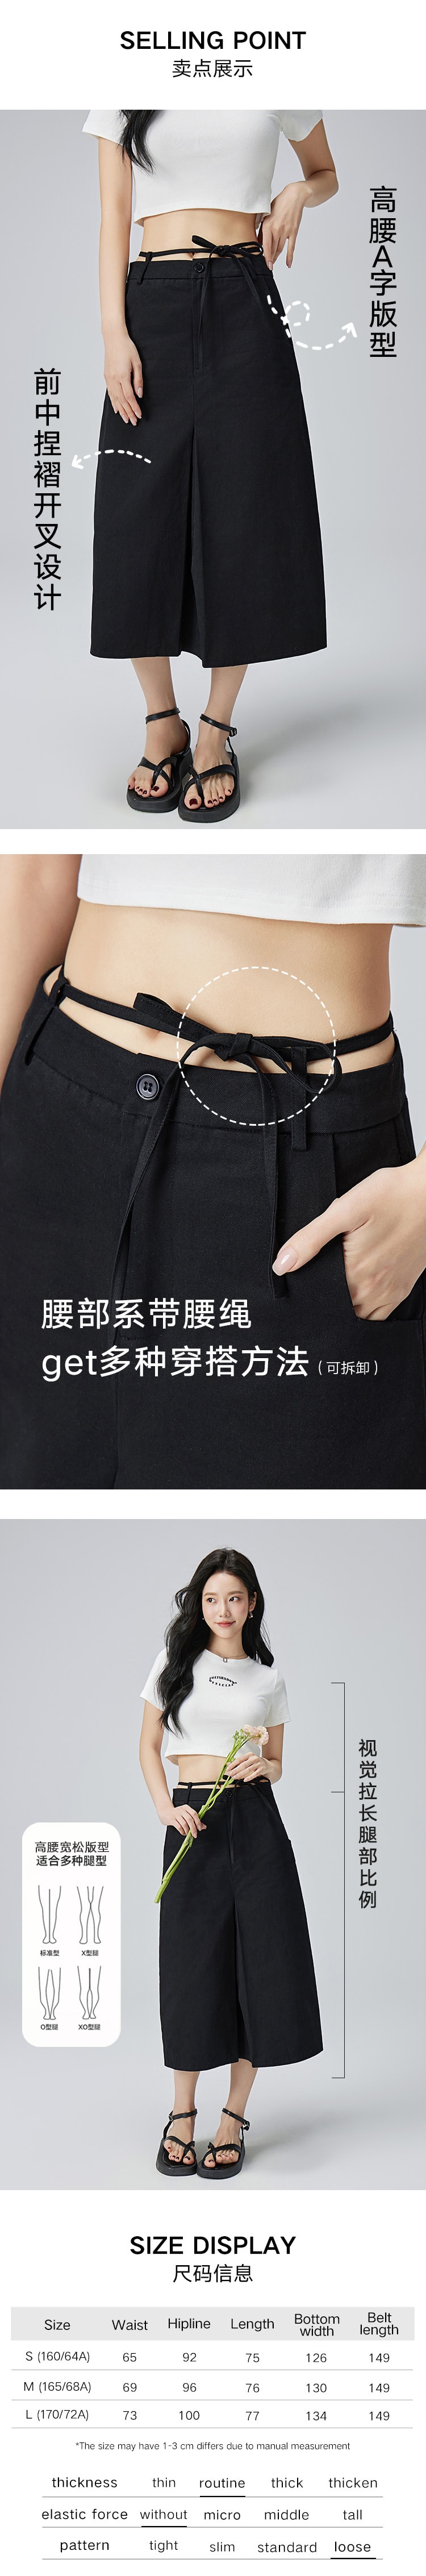 【中国直邮】HSPM 新款高腰A字系带开叉半身裙 黑色 L